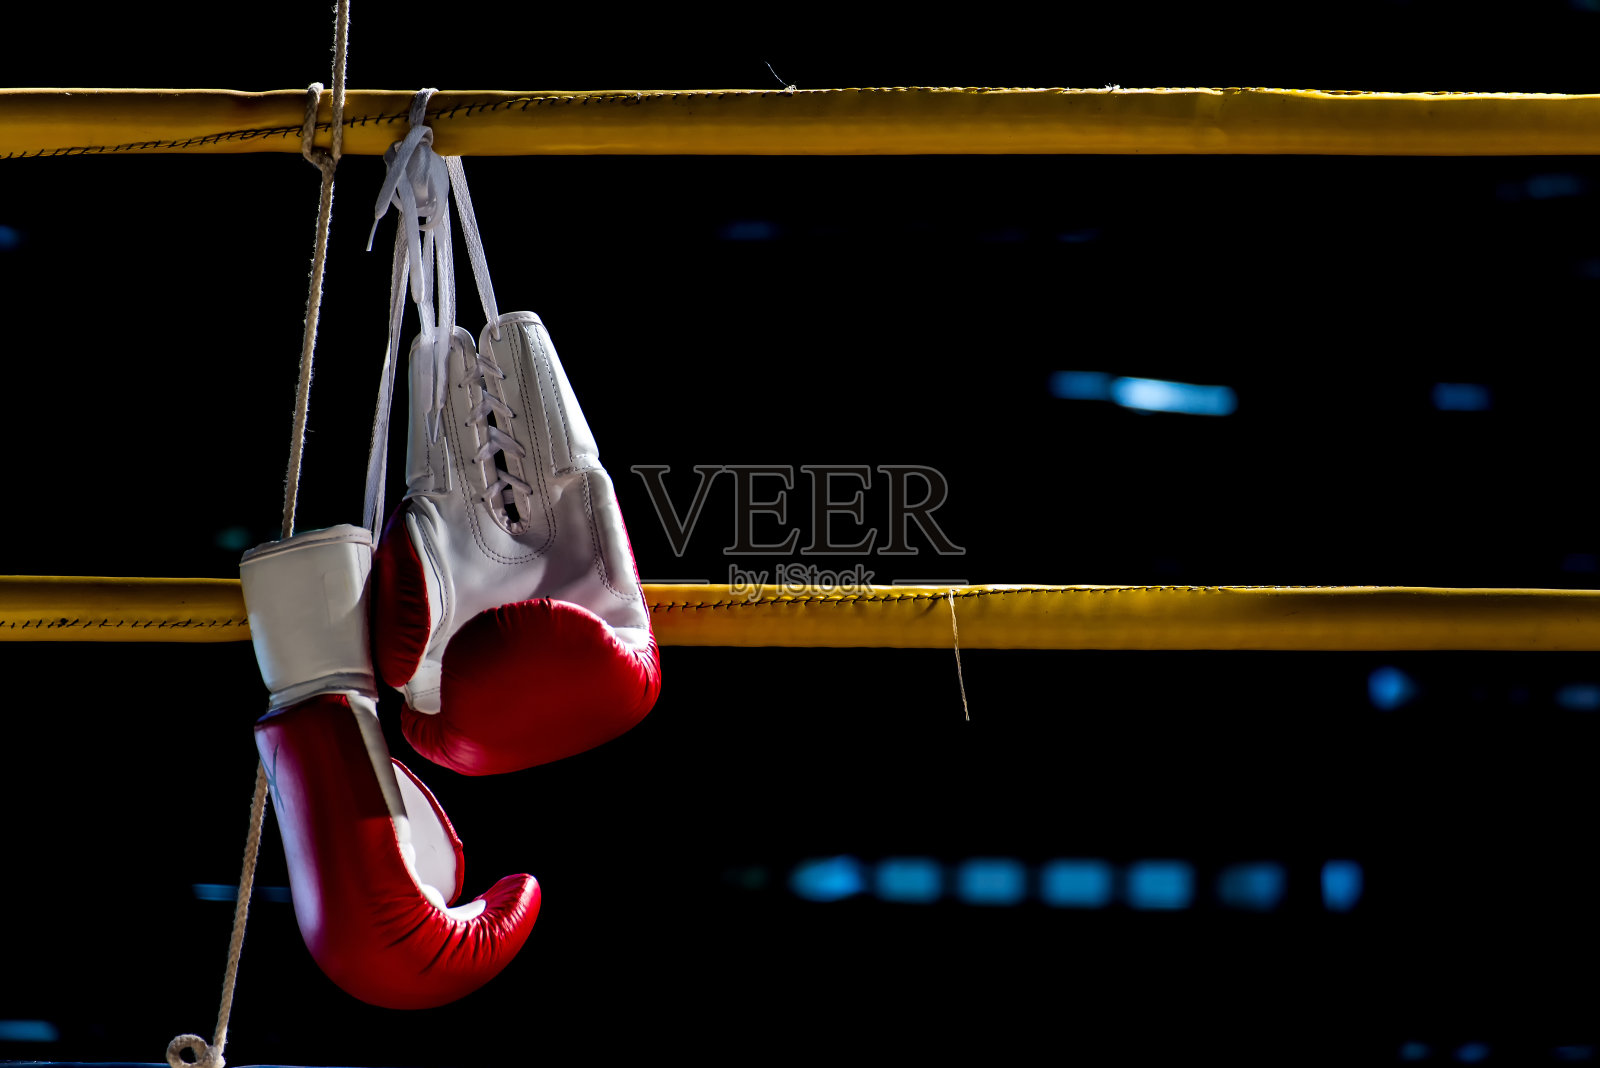 拳击手套挂在拳击台上照片摄影图片